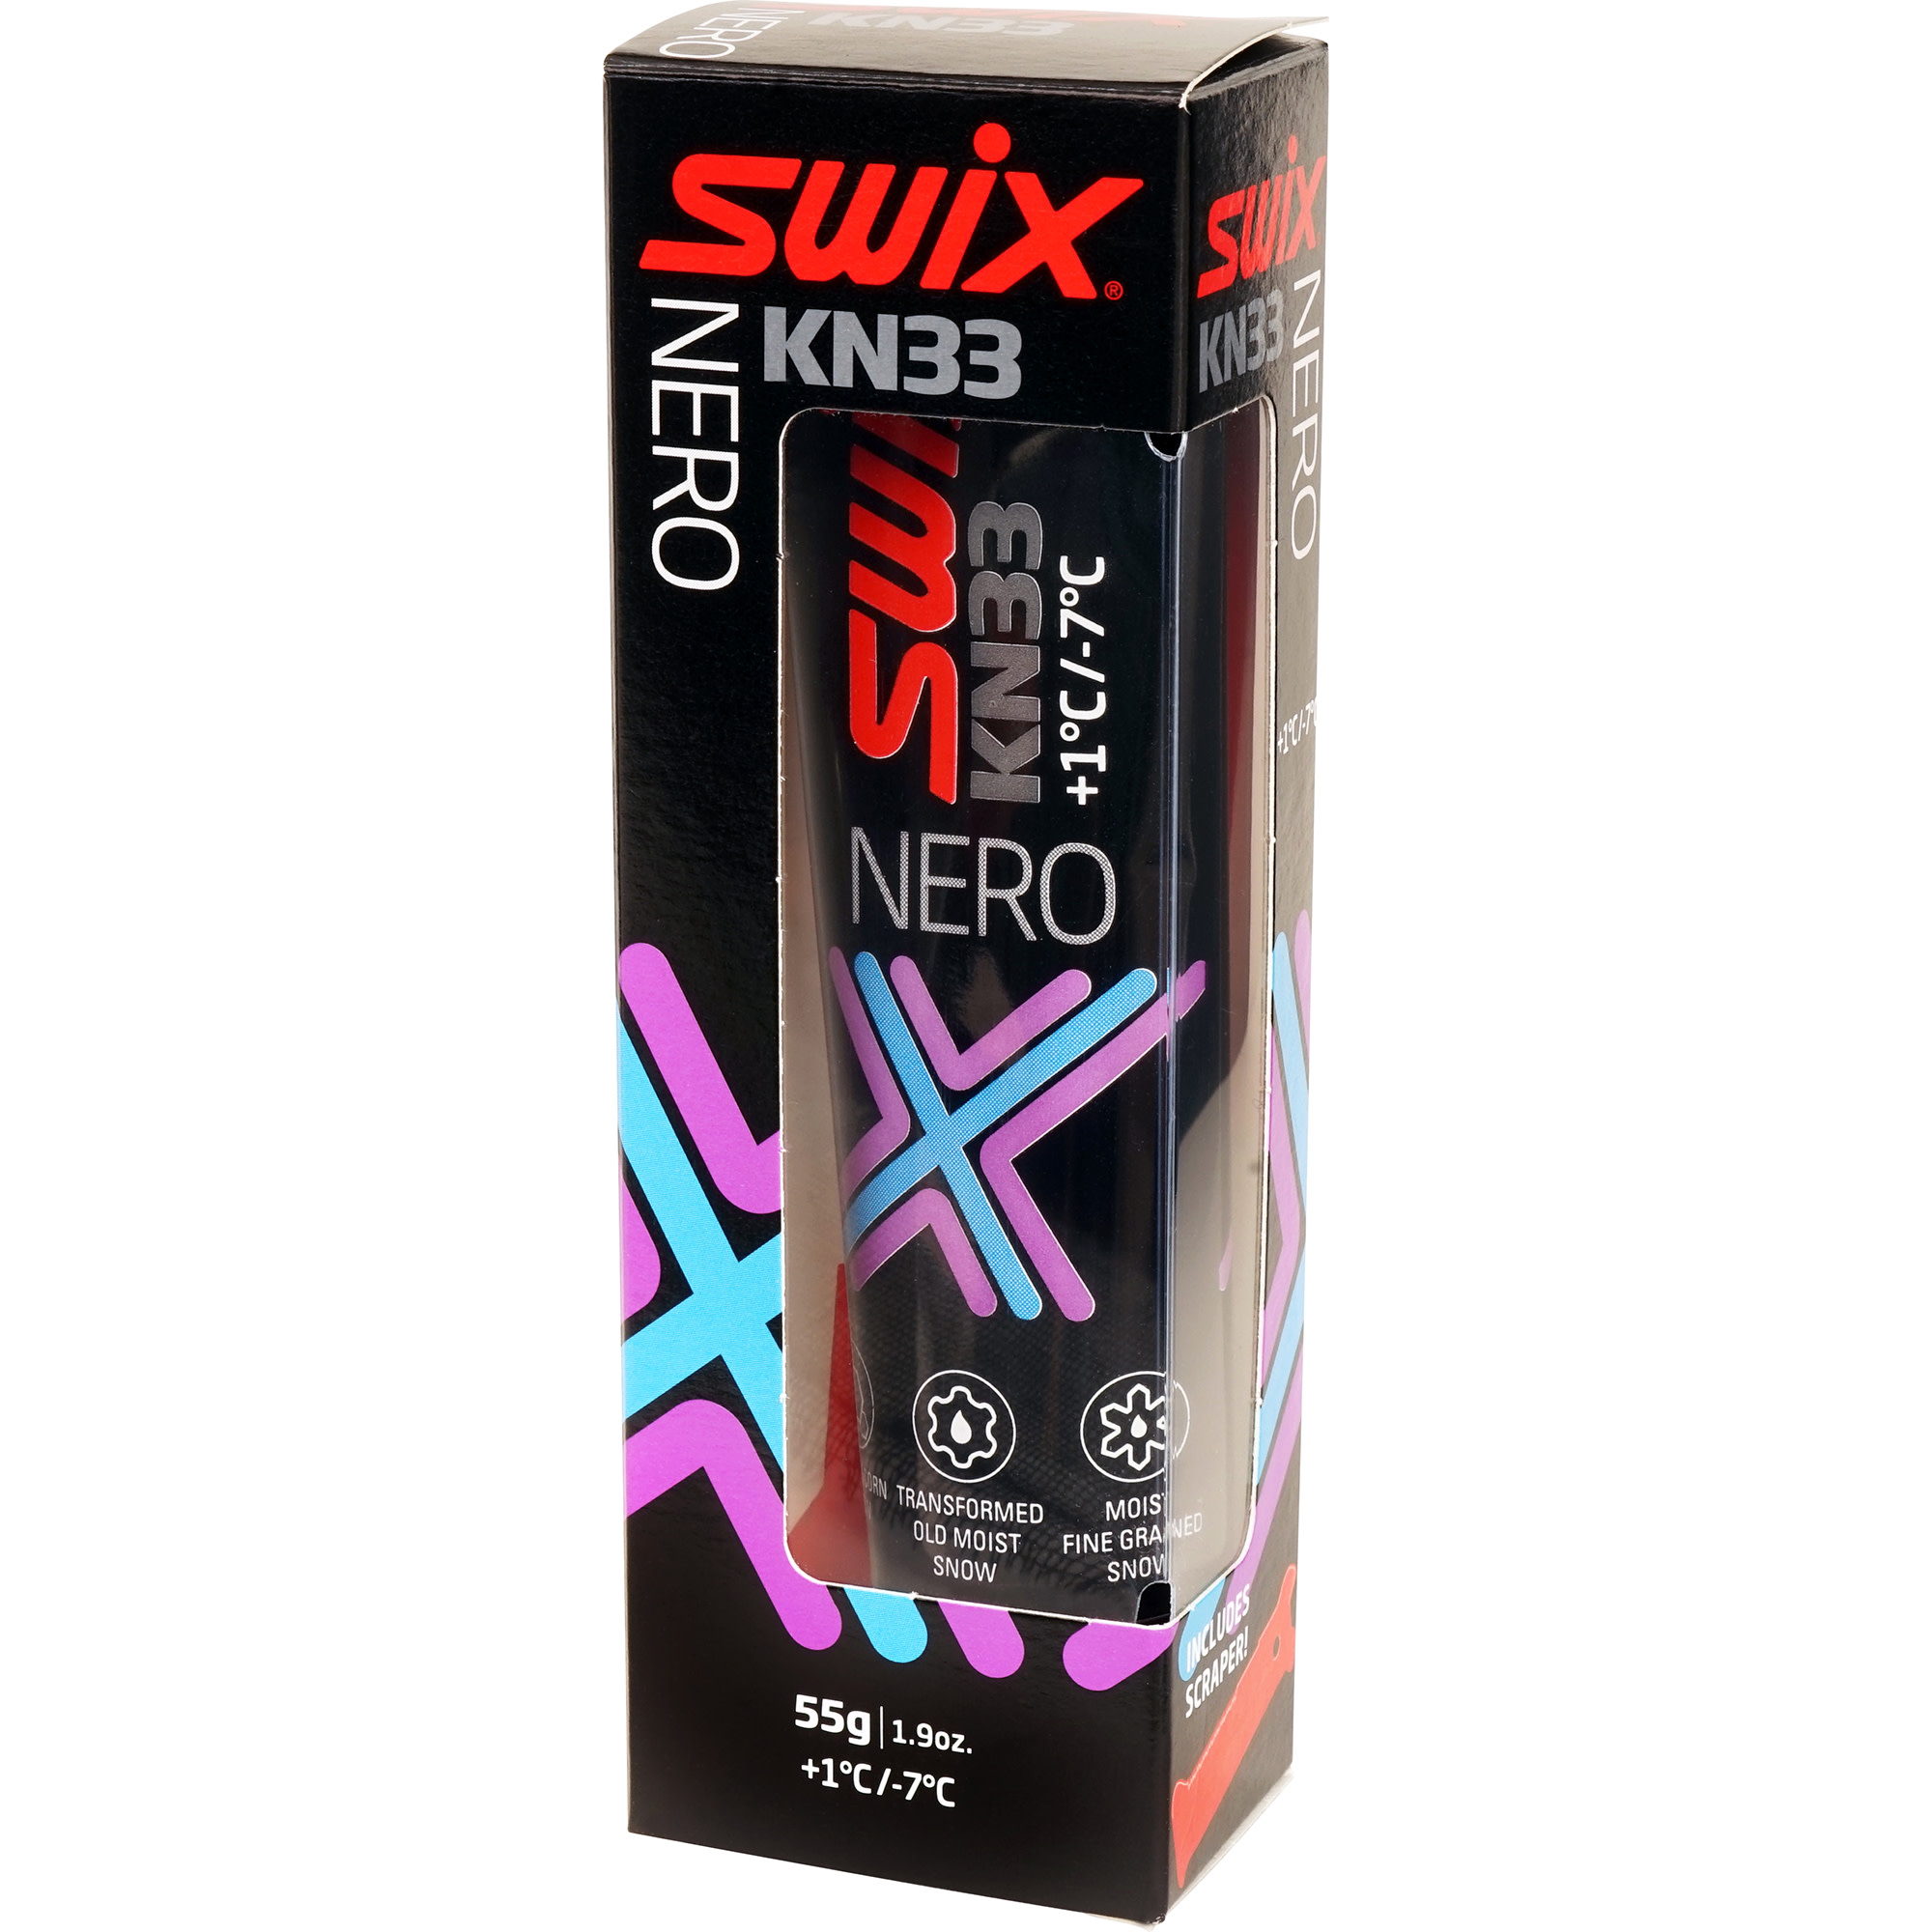 swix KN33 Nero +1c/-7c